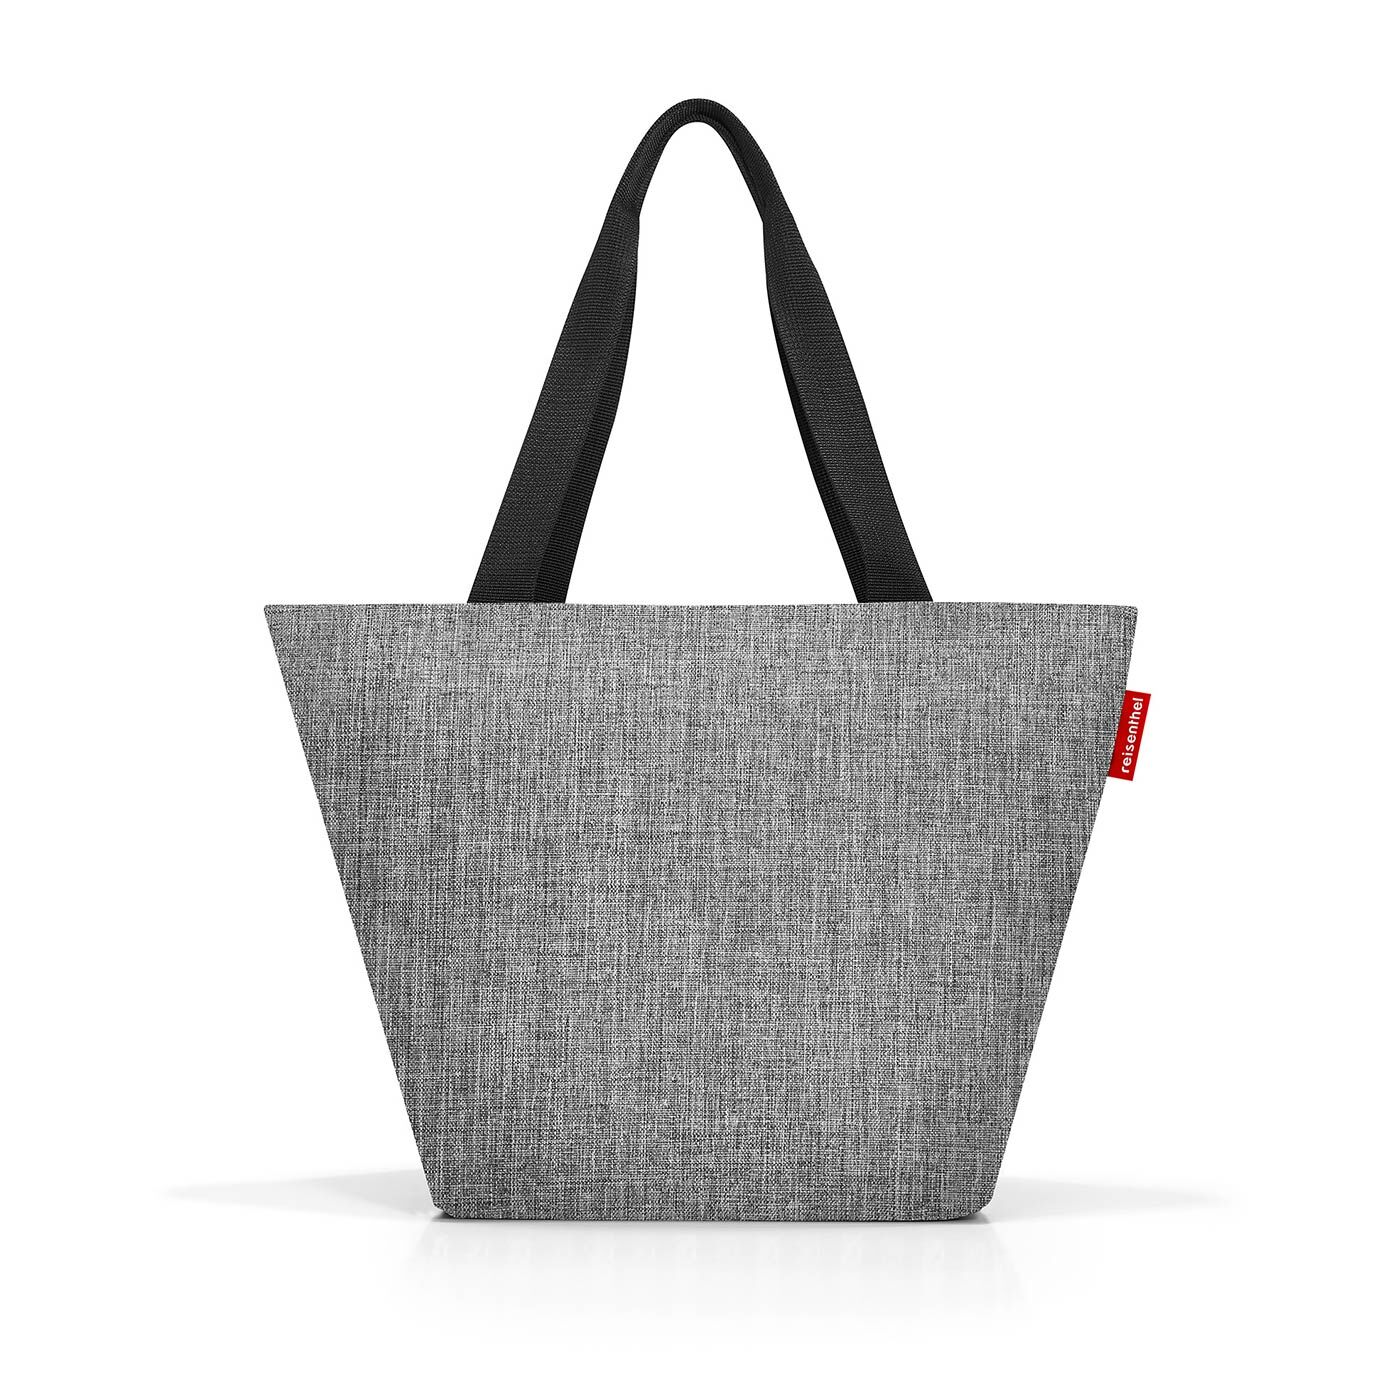 Easyshoppingbag- die perfekte Einkaufstasche! 